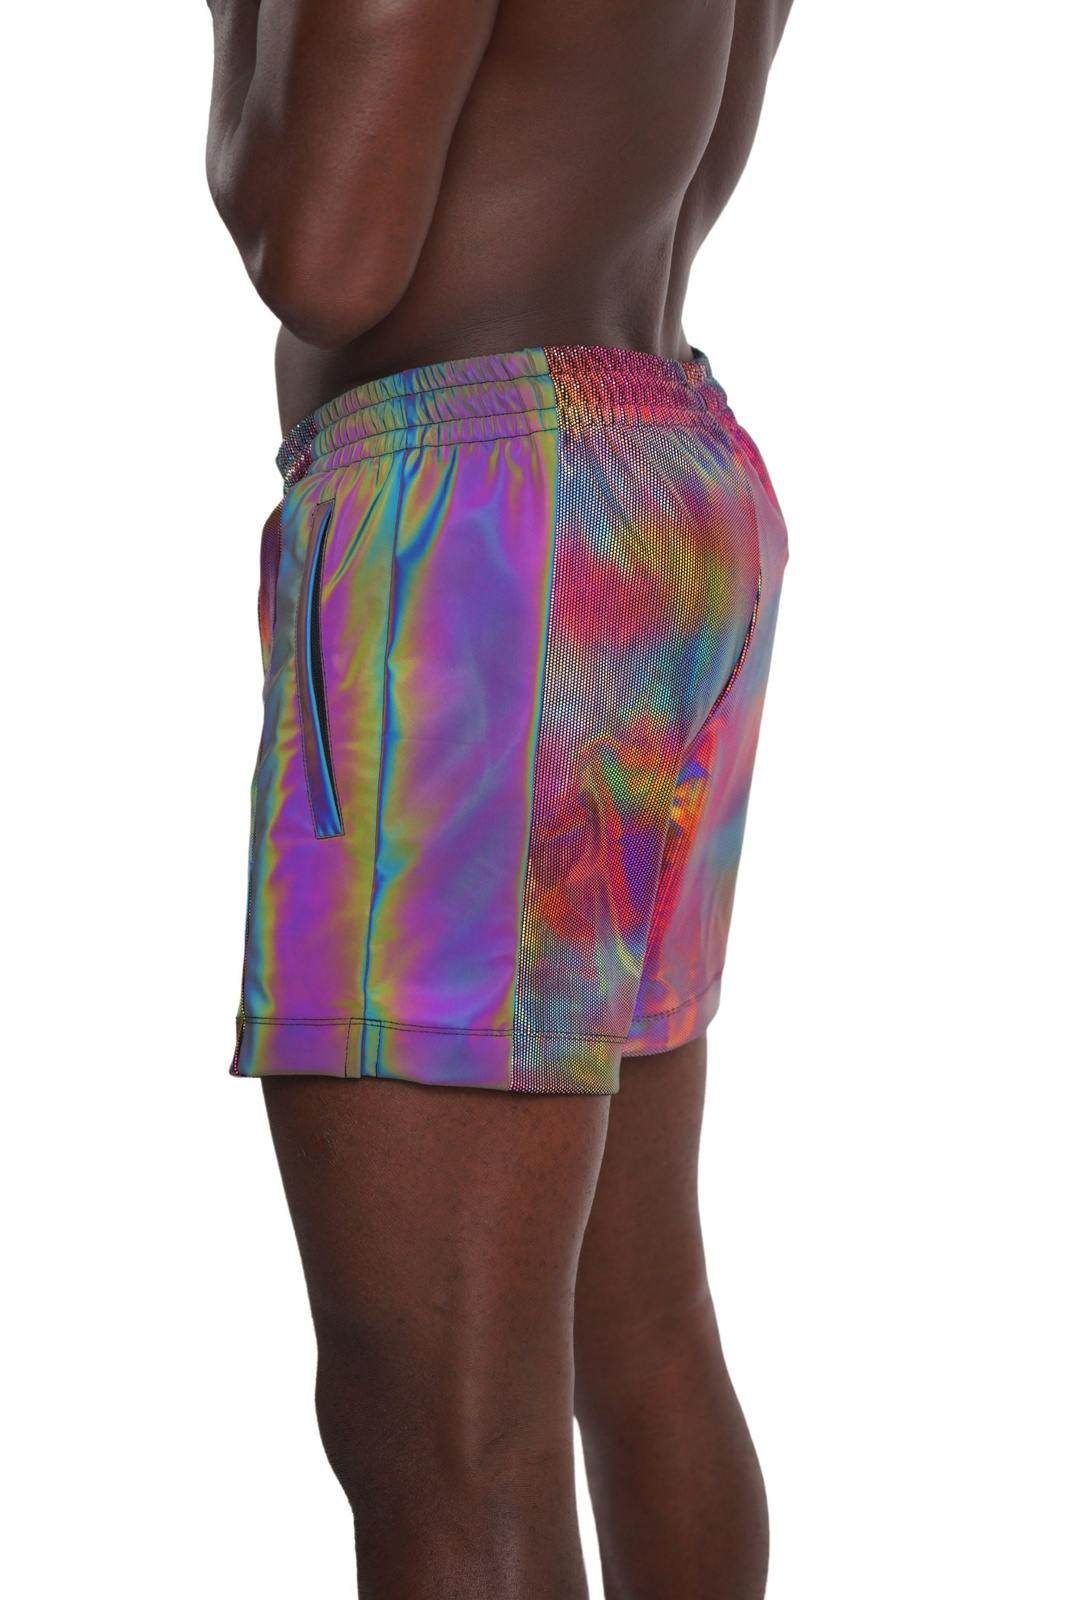 Mens Rainbow Shorts from Love Khaos